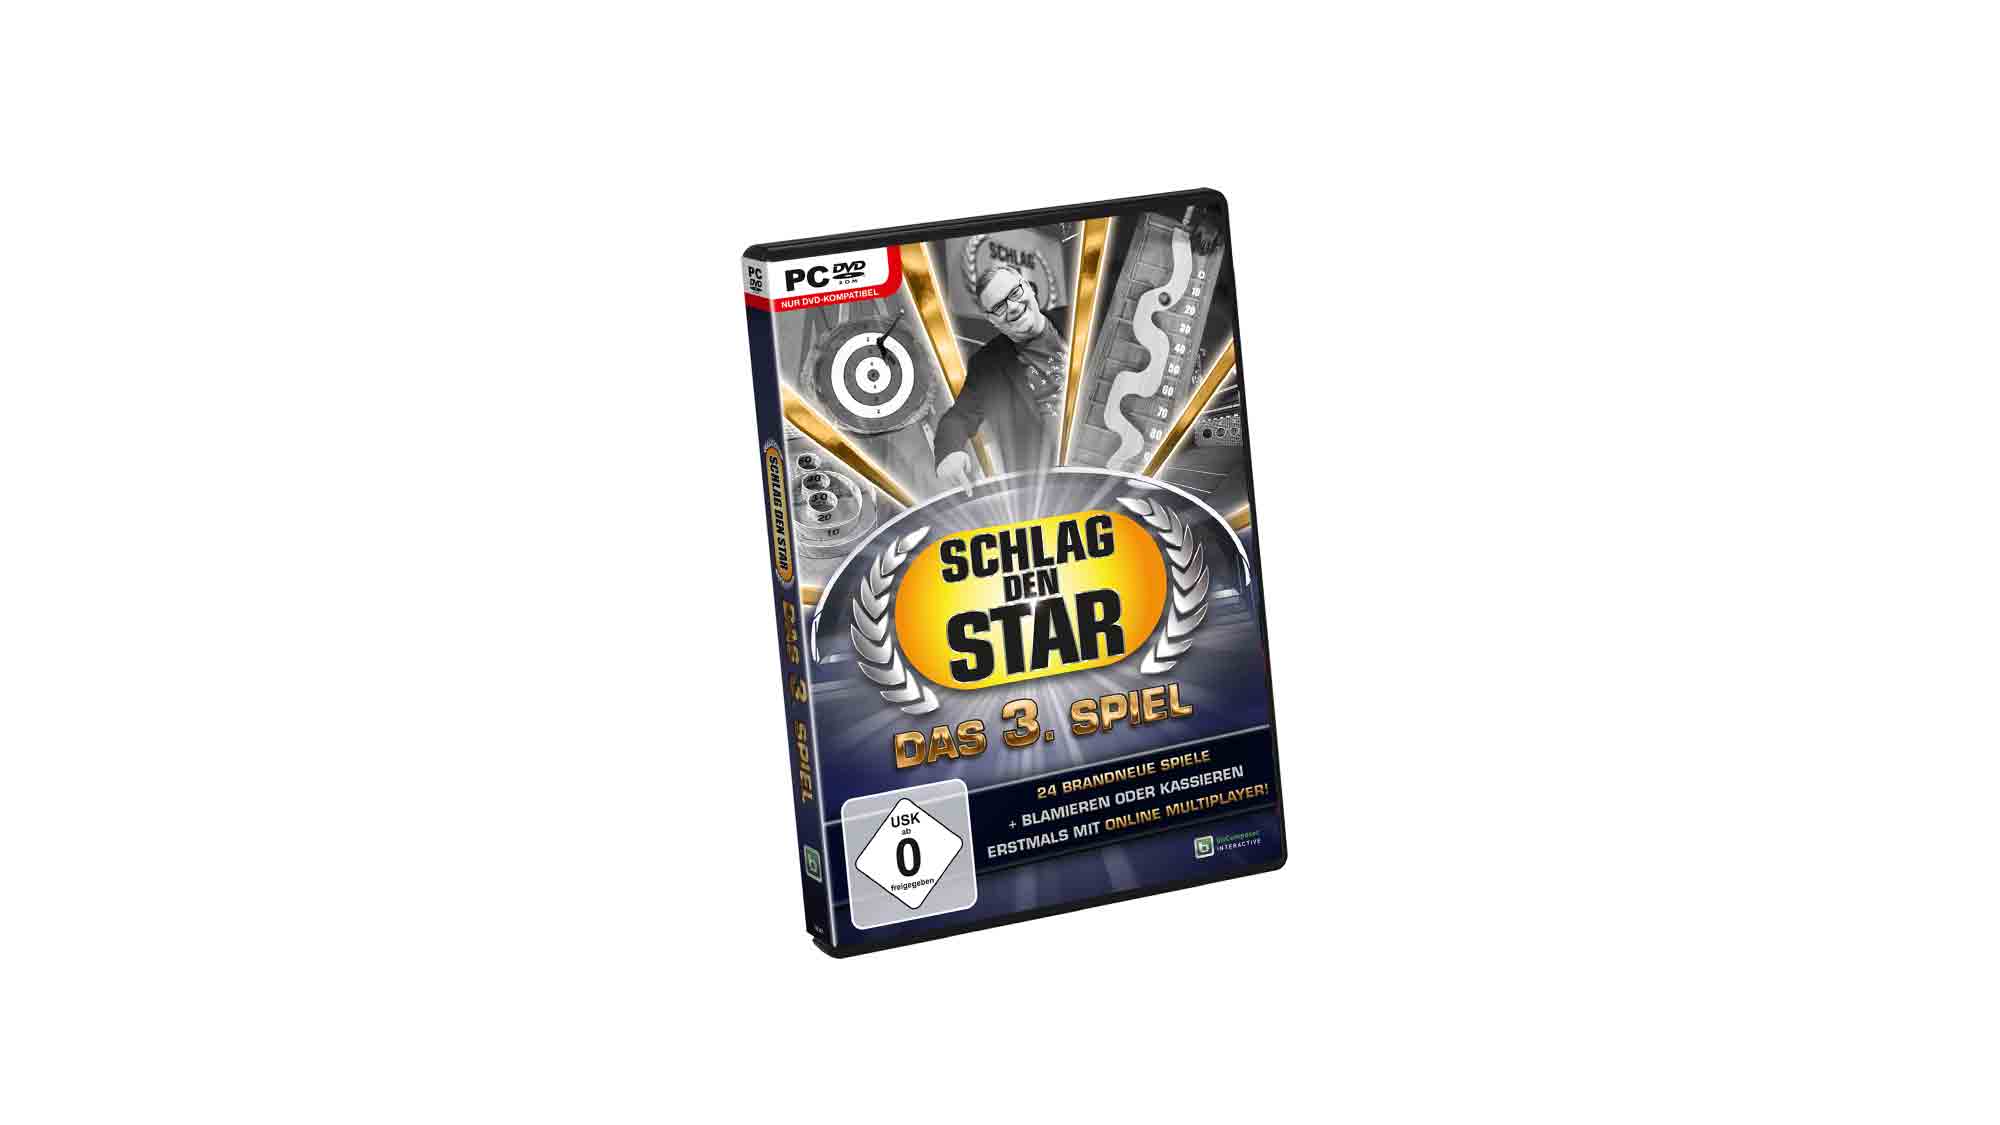 Schlag’ den Star – das 3. Spiel